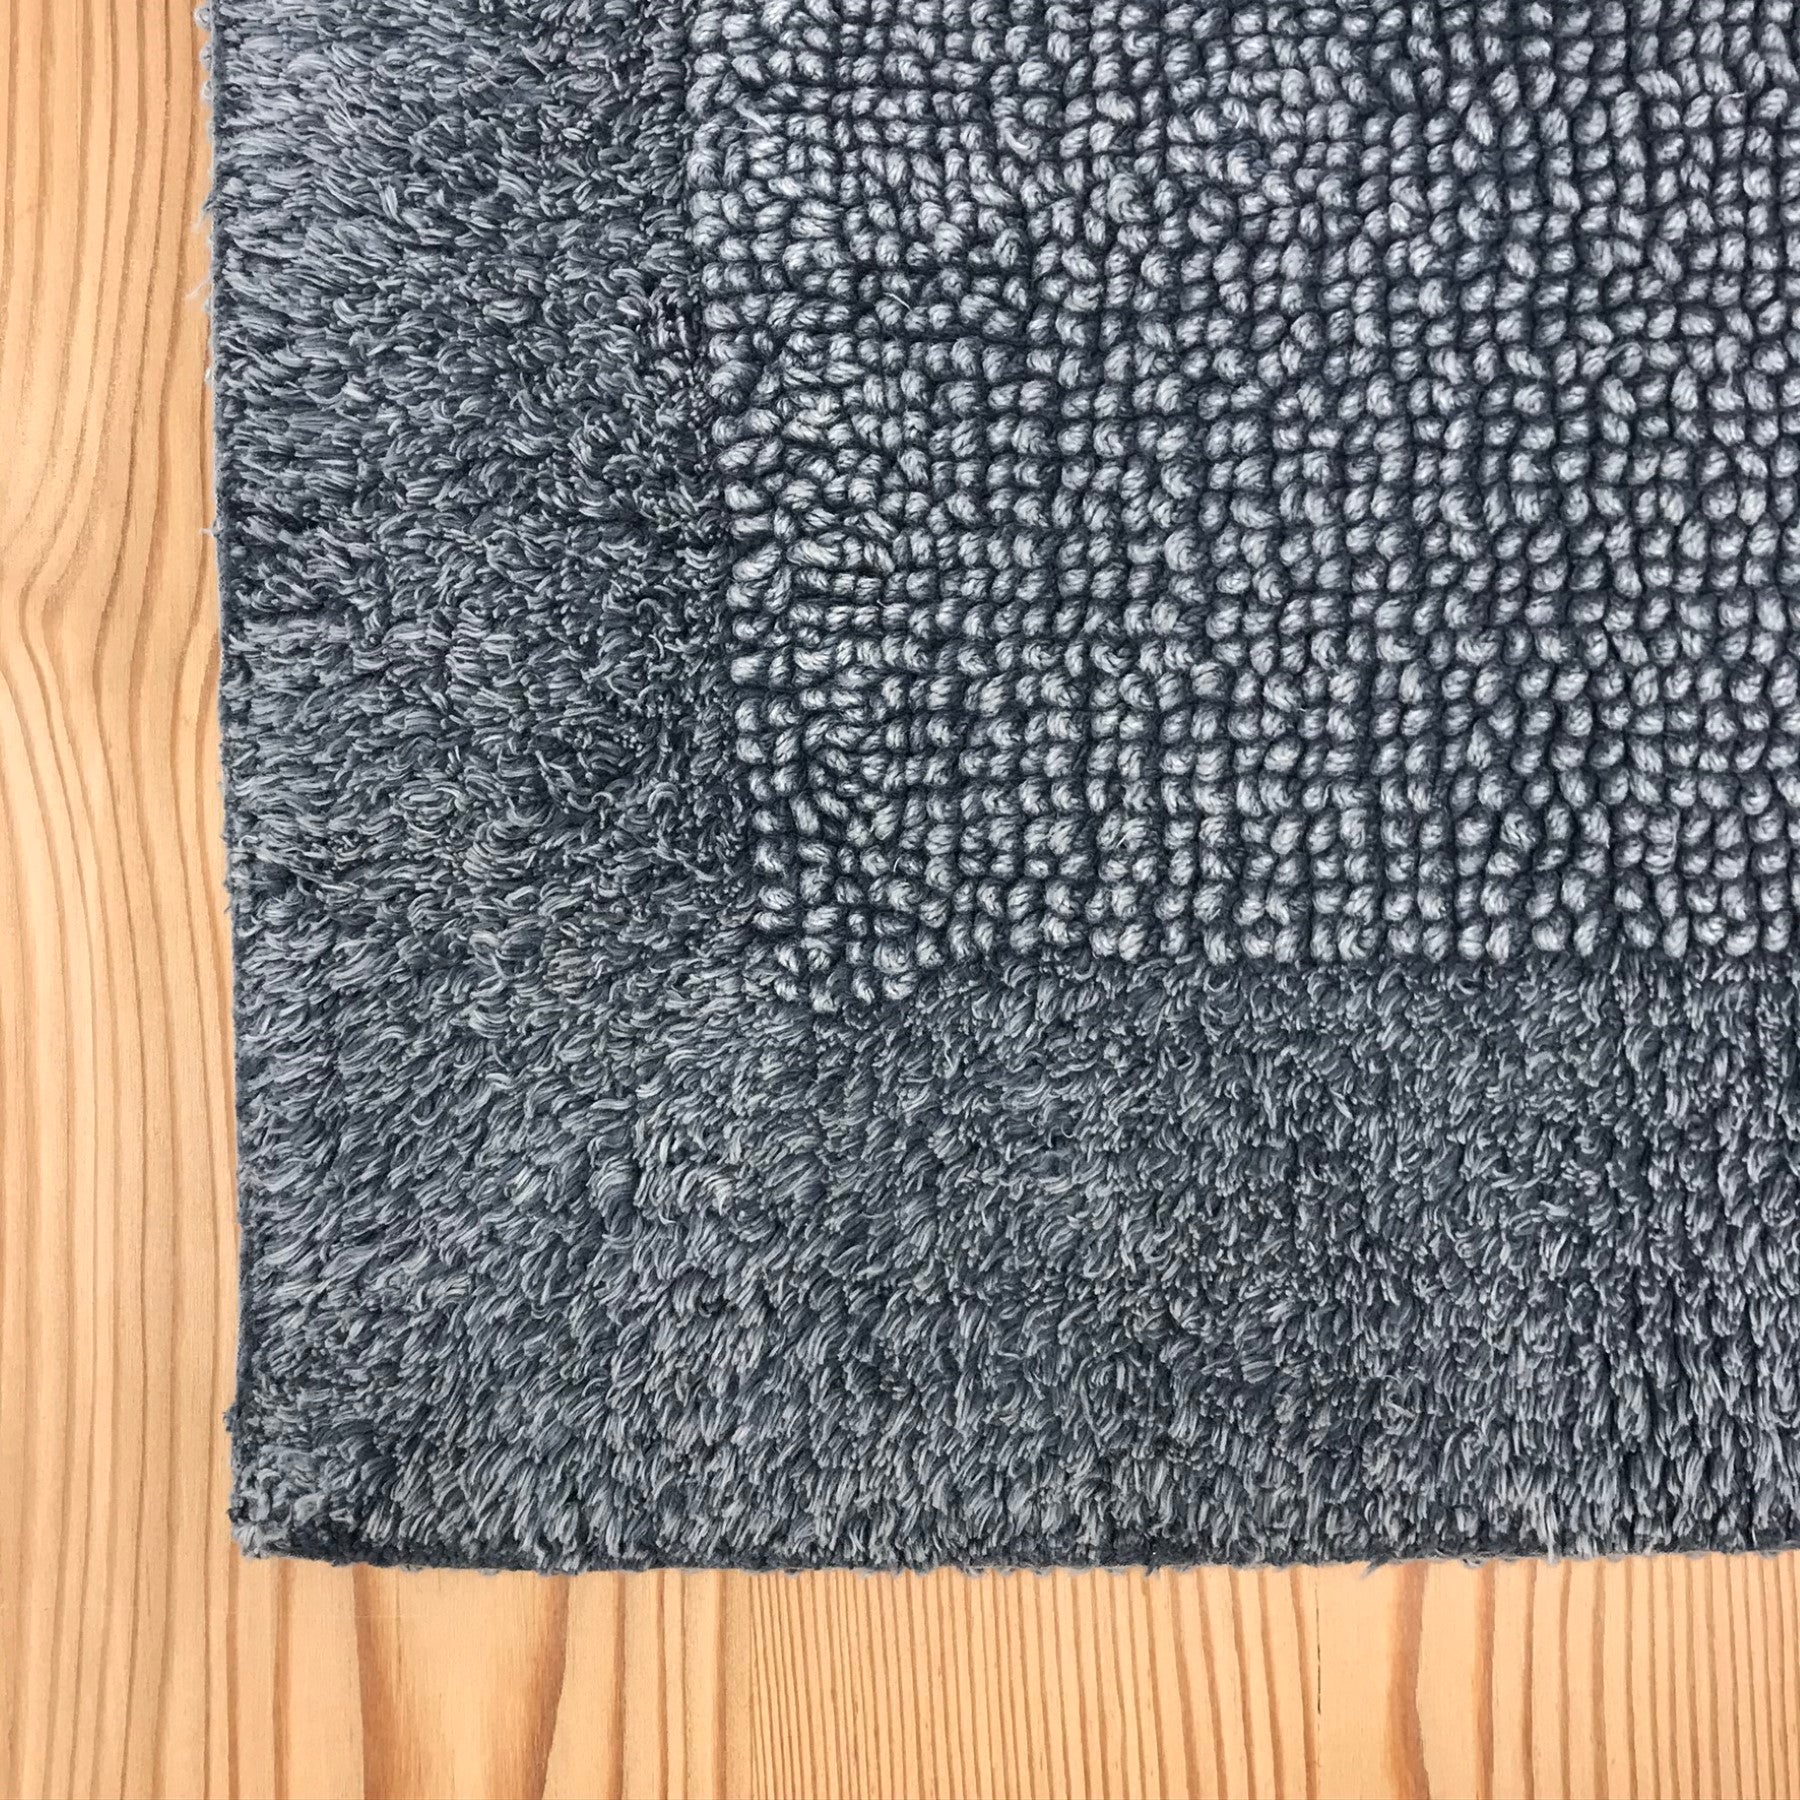 Tappeto scendi doccia 100% cotone colore grigio 45x65 cm